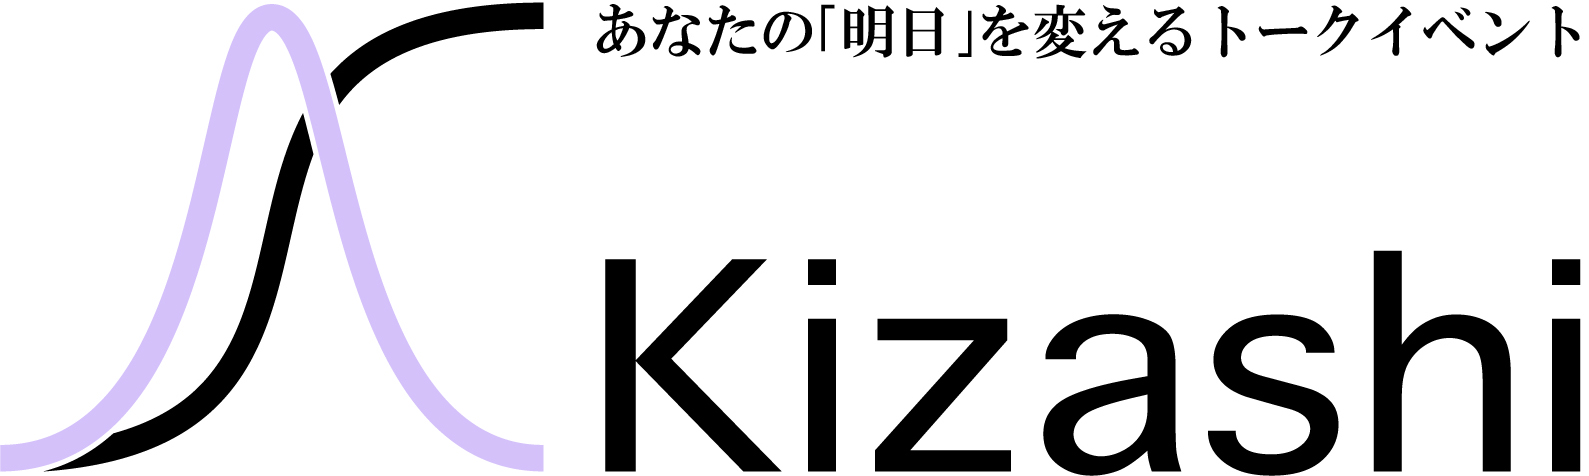 KIZASHIロゴ